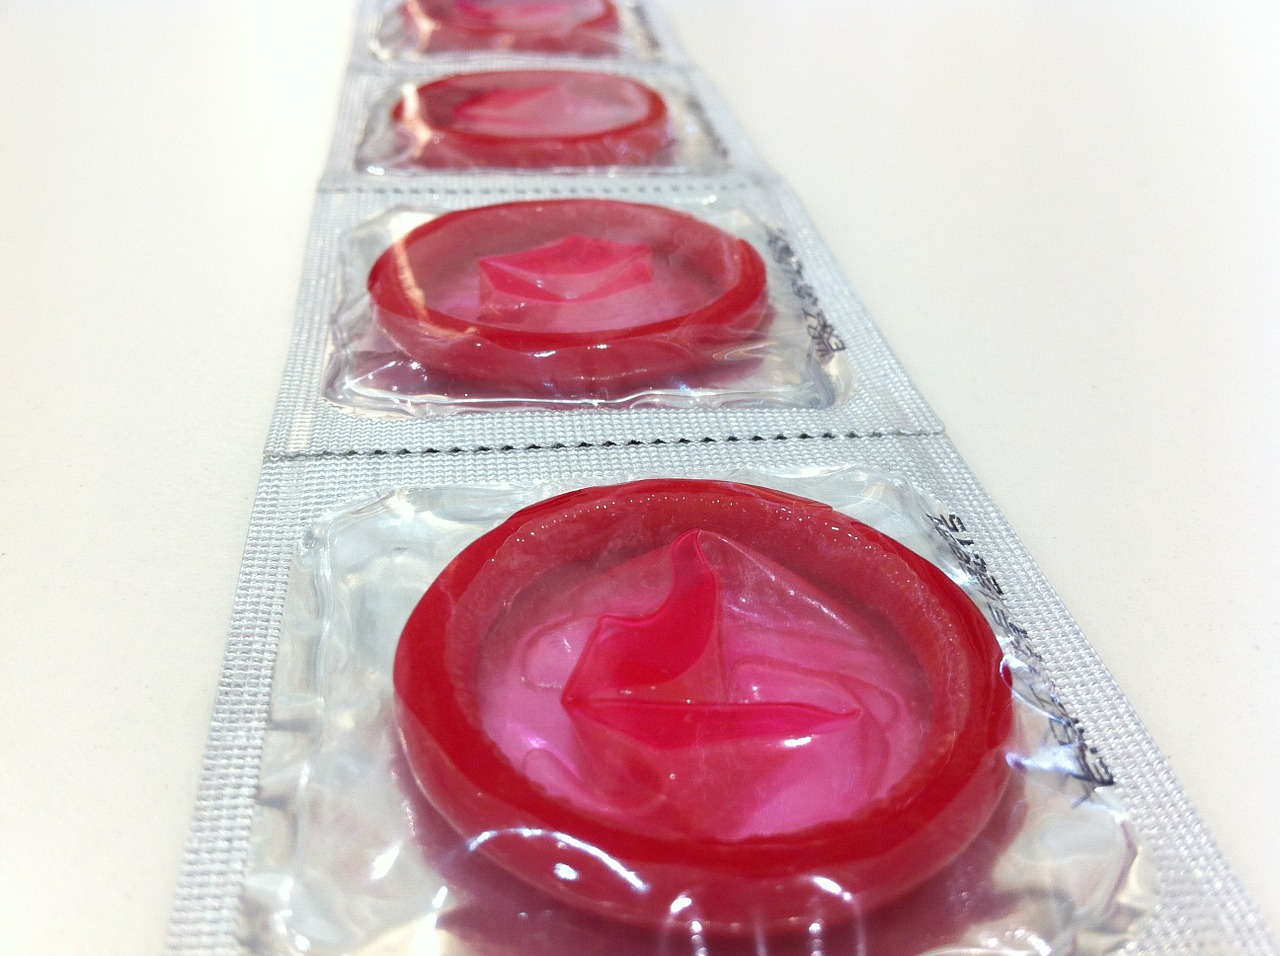 Une pénurie "désastreuse" de préservatifs menace à cause du virus